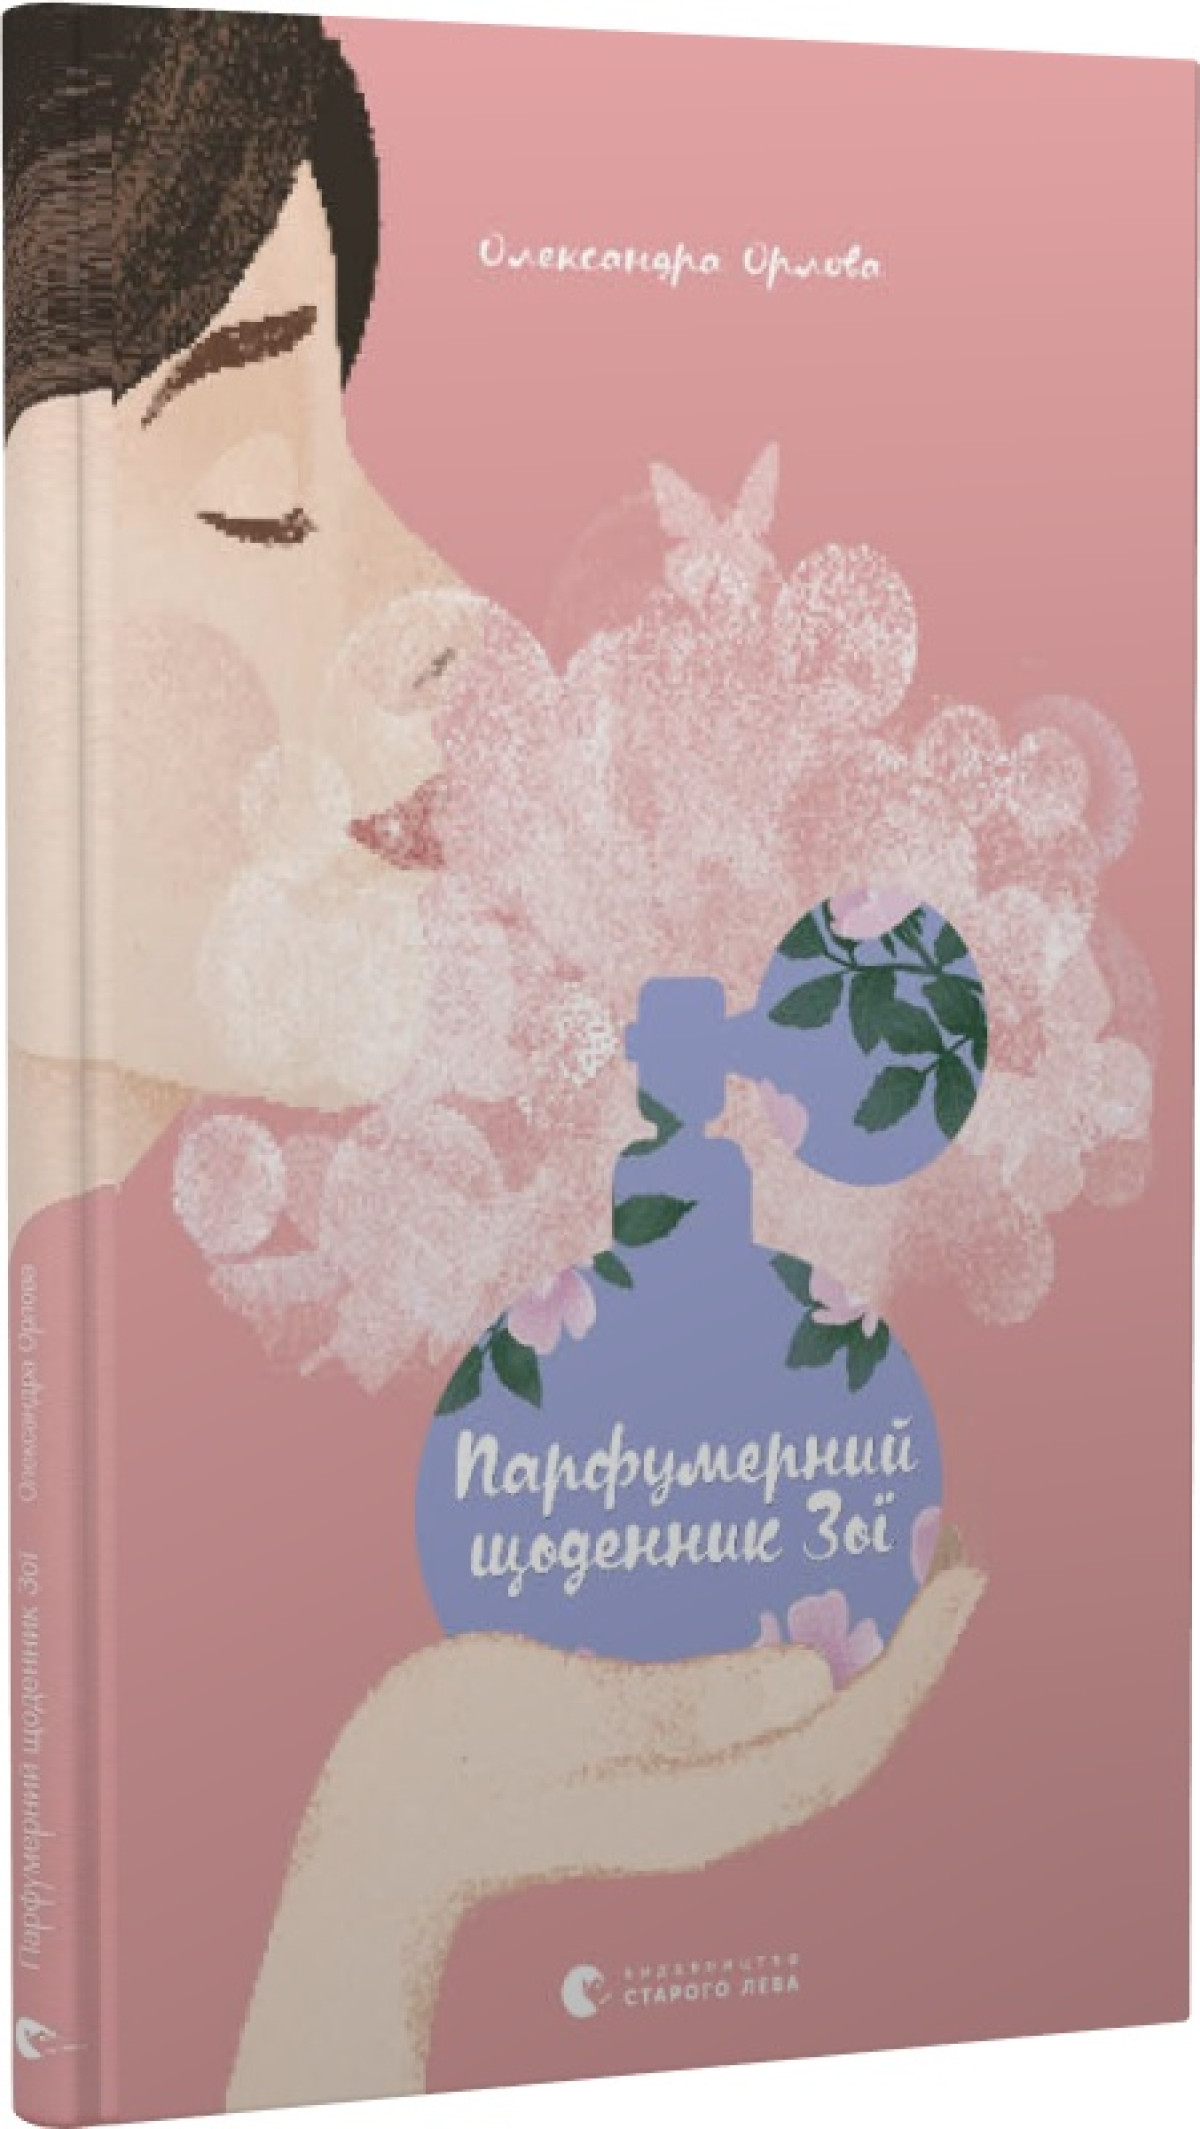 «Парфюмерный дневник Зои», Александра Орлова